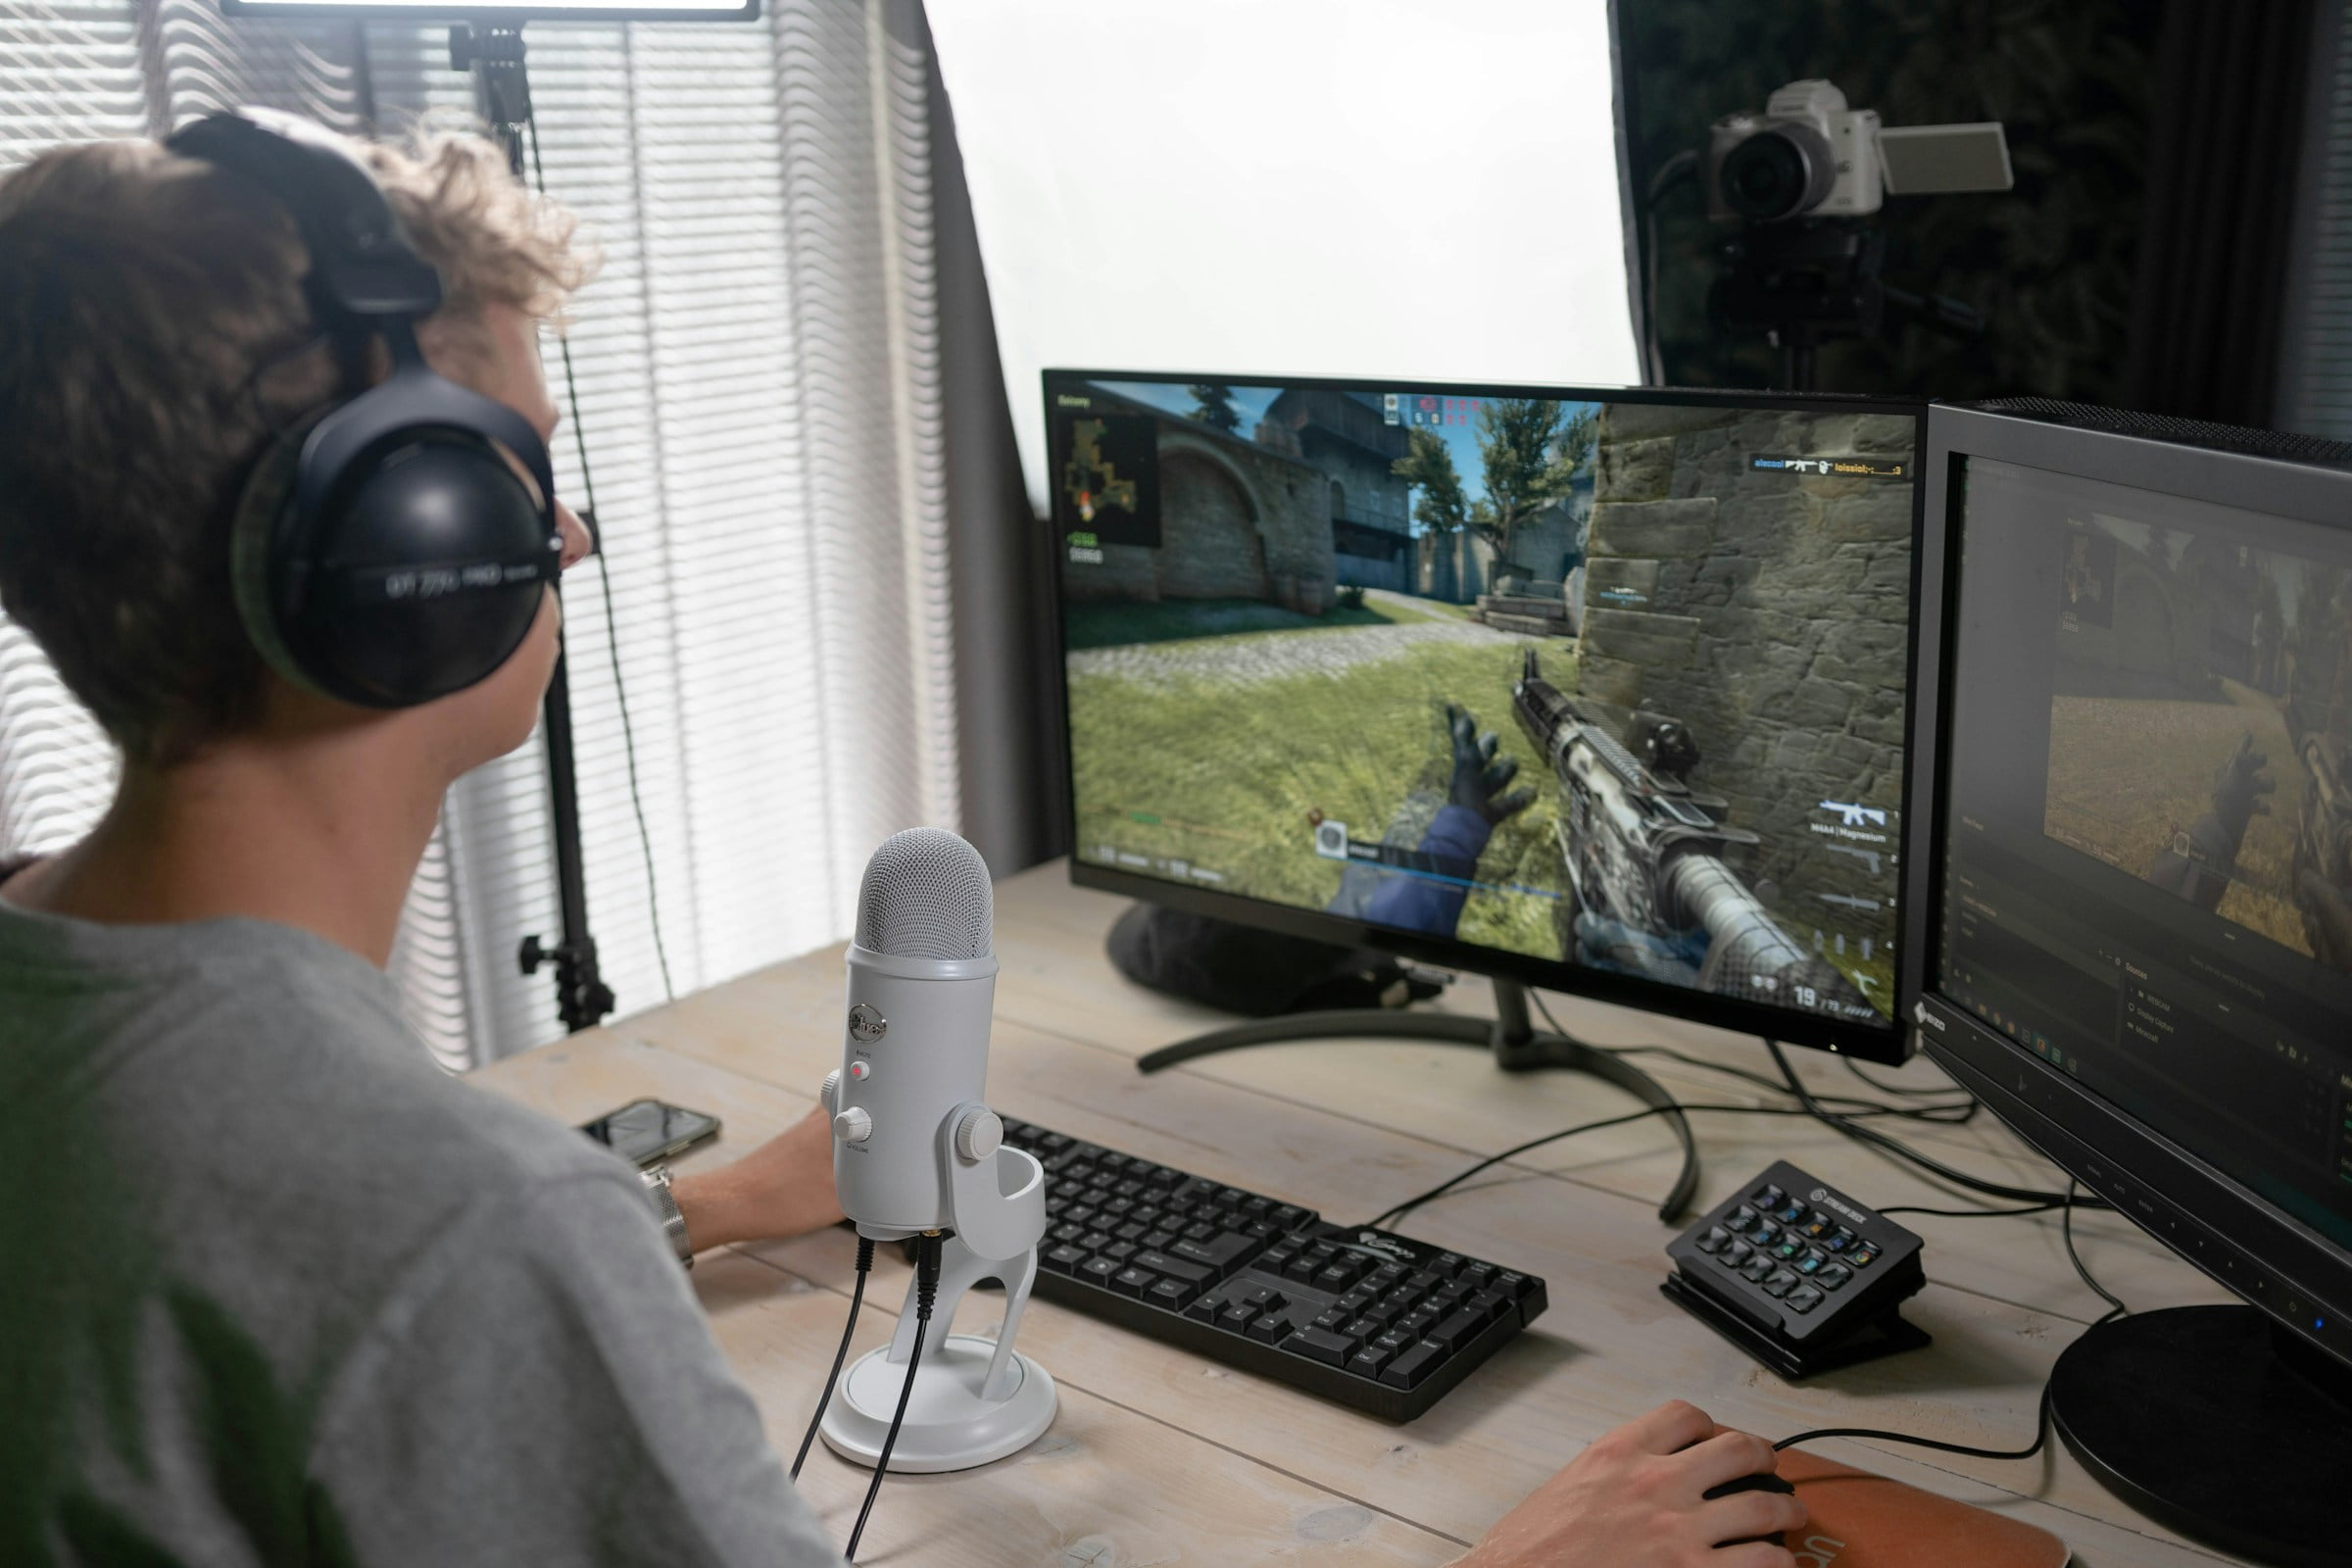 Usuario haciendo streaming de un videojuego con un micrófono y una cámara DSLR